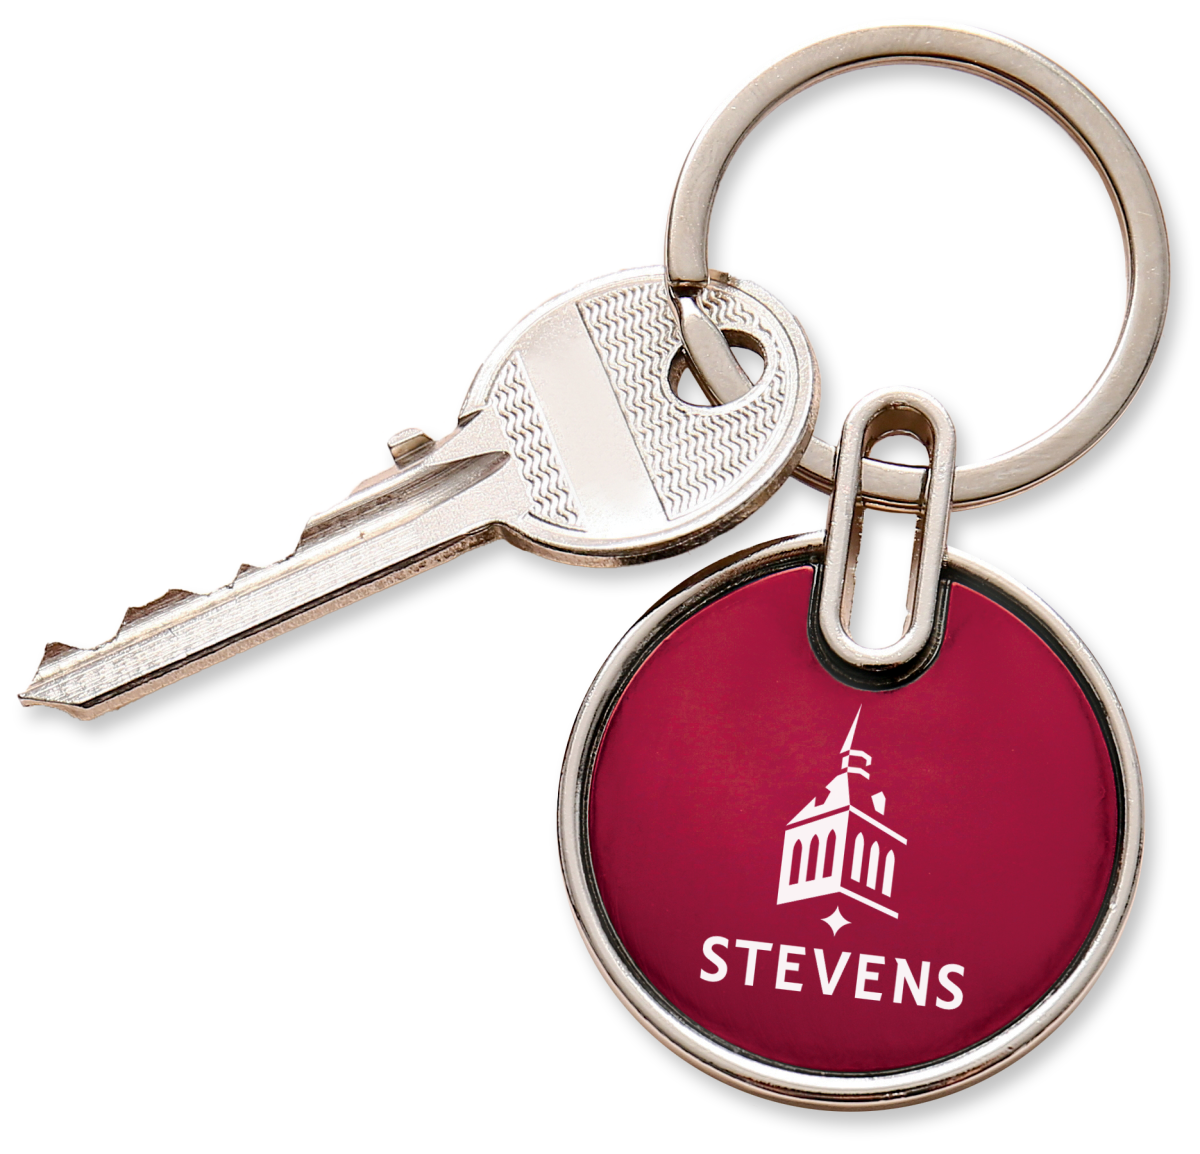  Key on a keychain